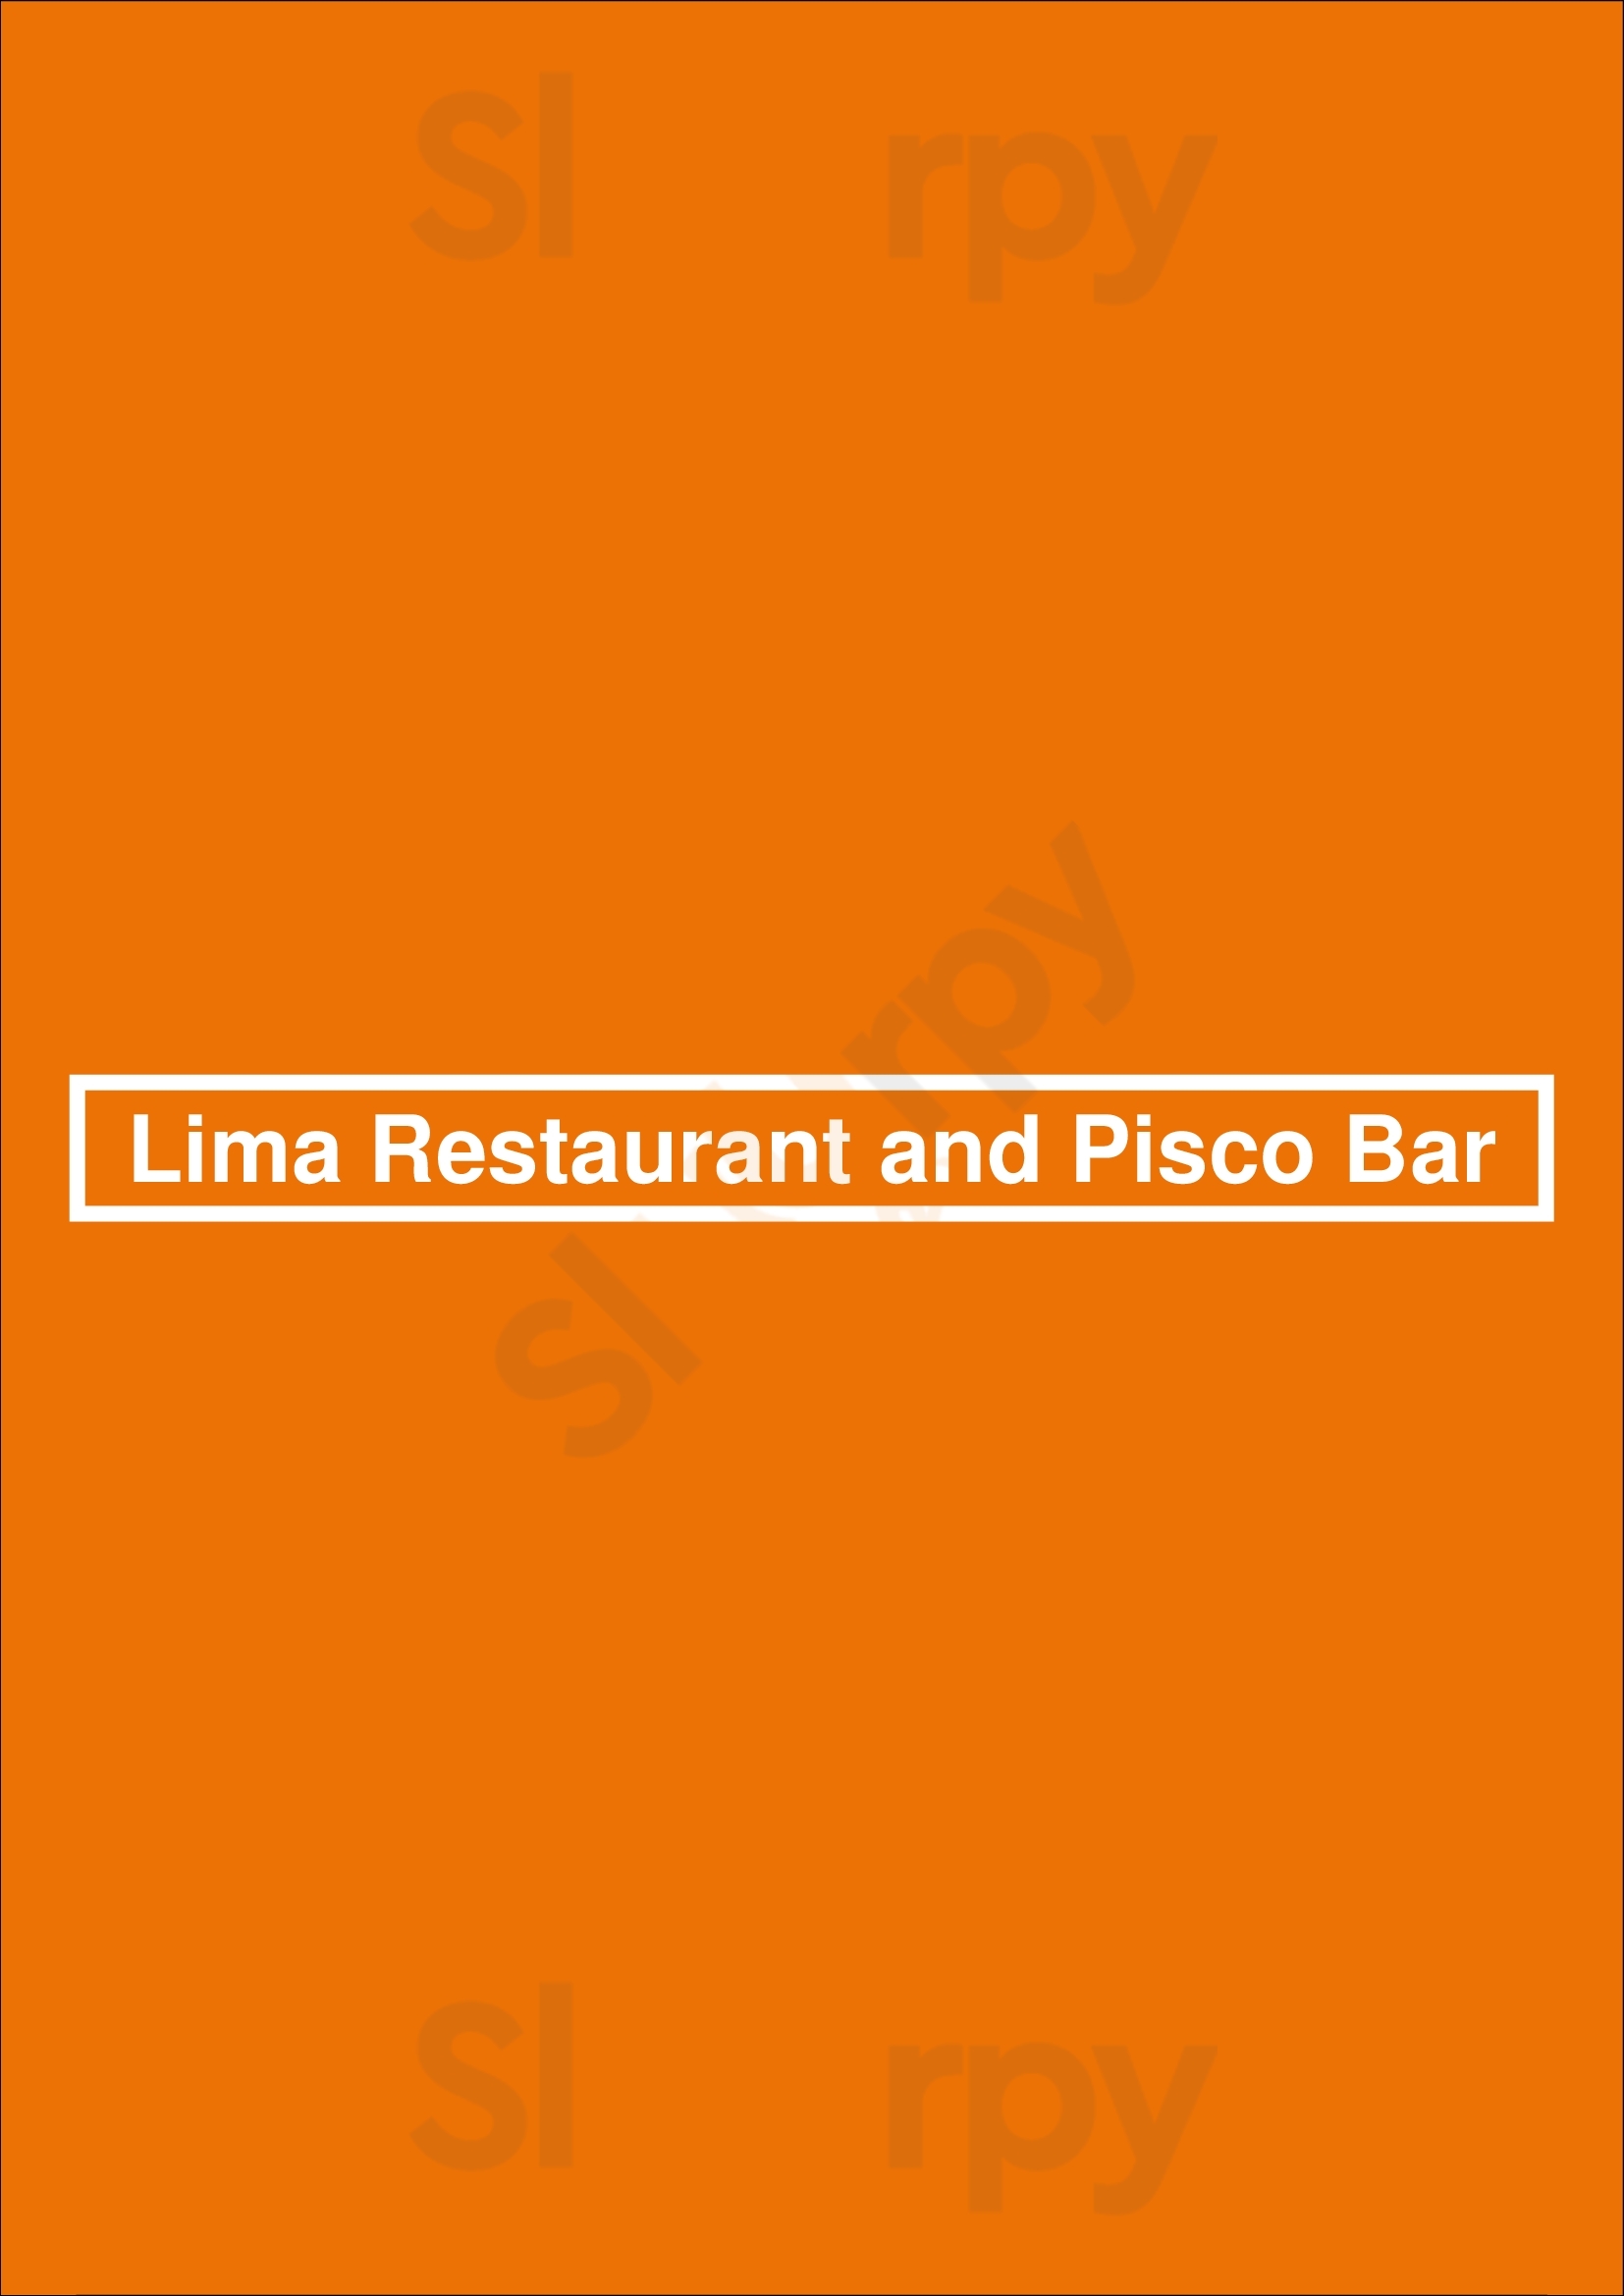 Lima Restaurant And Pisco Bar Naples Menu - 1